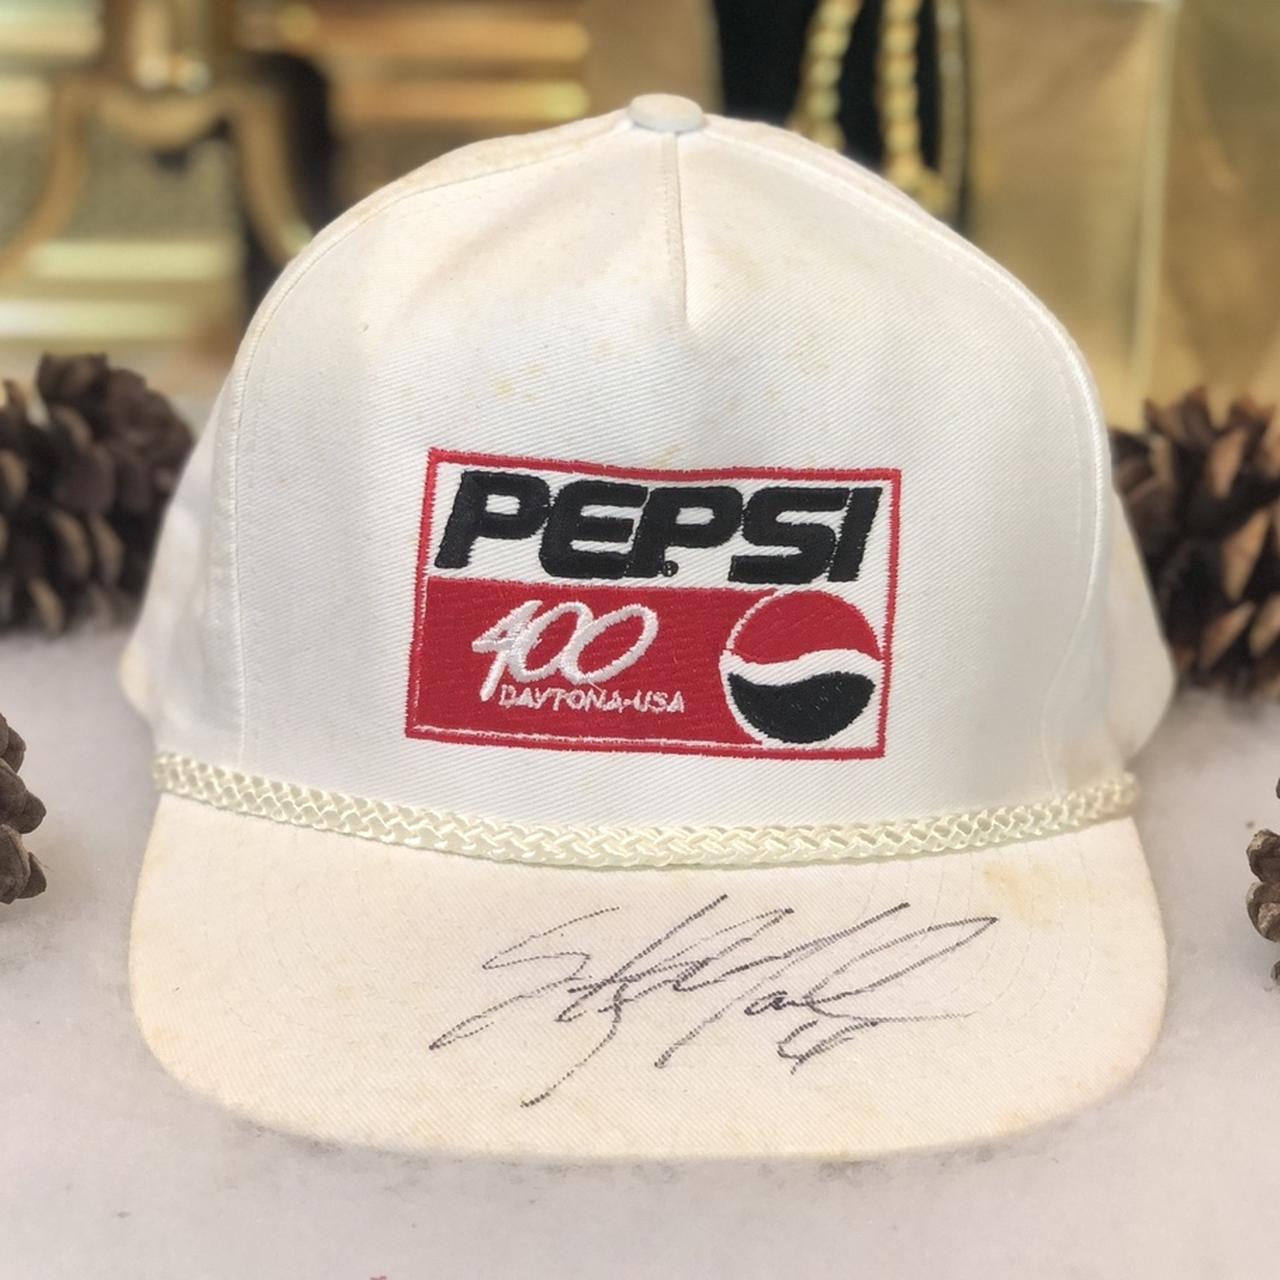 Vintage NASCAR Pepsi 400 Daytona Sterling Marlin Signed Snapback Hat